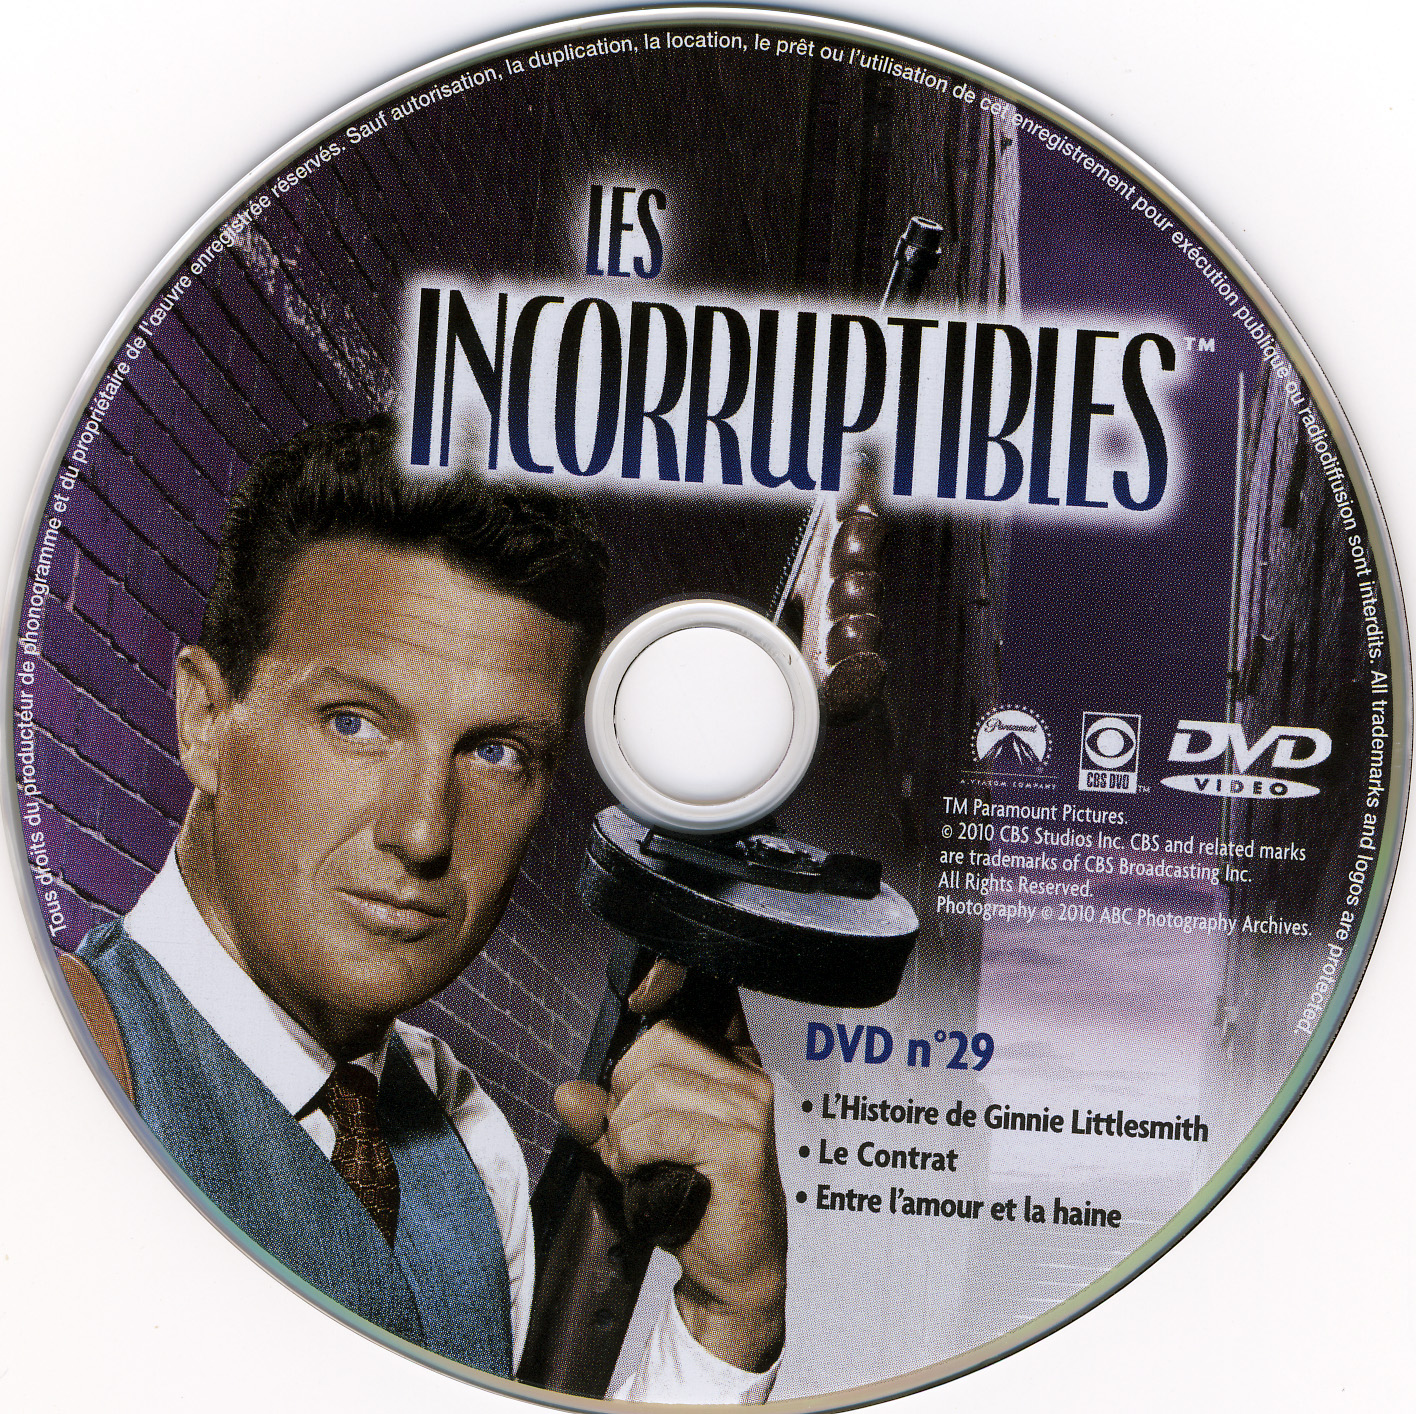 Les incorruptibles intgrale DVD 29